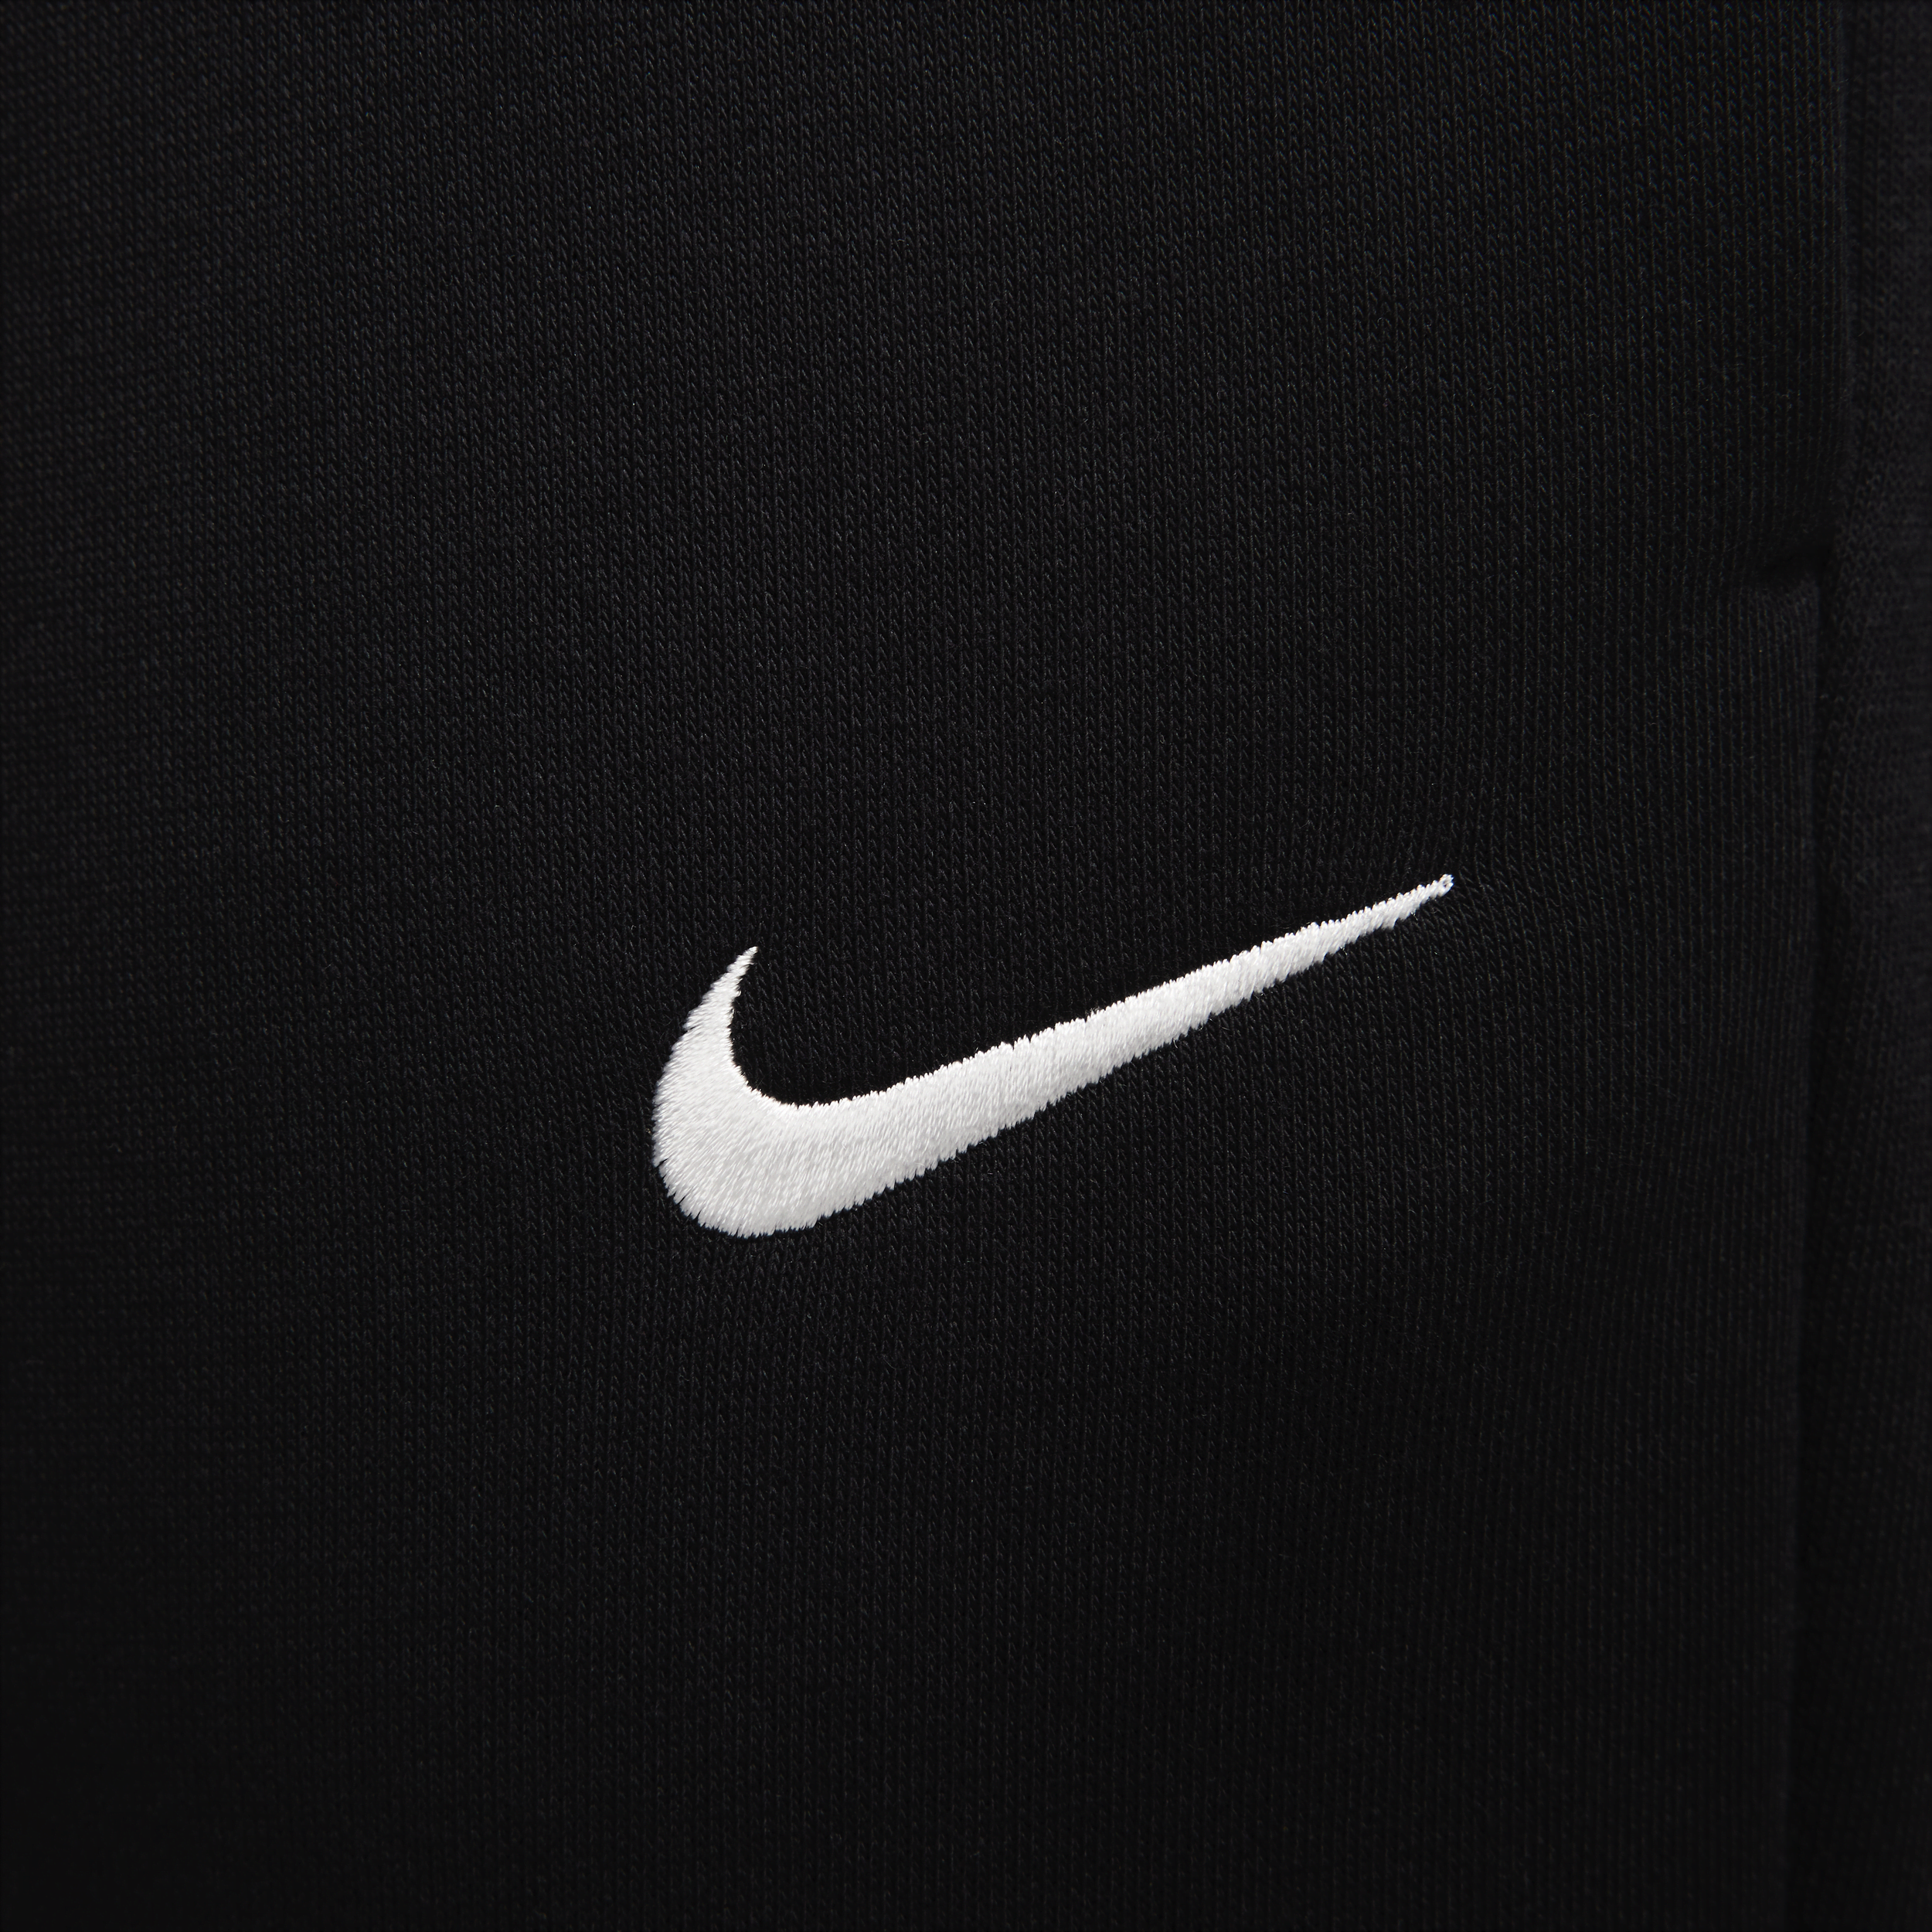 Nike Sportswear Phoenix Fleece joggingbroek met halfhoge taille voor dames Zwart